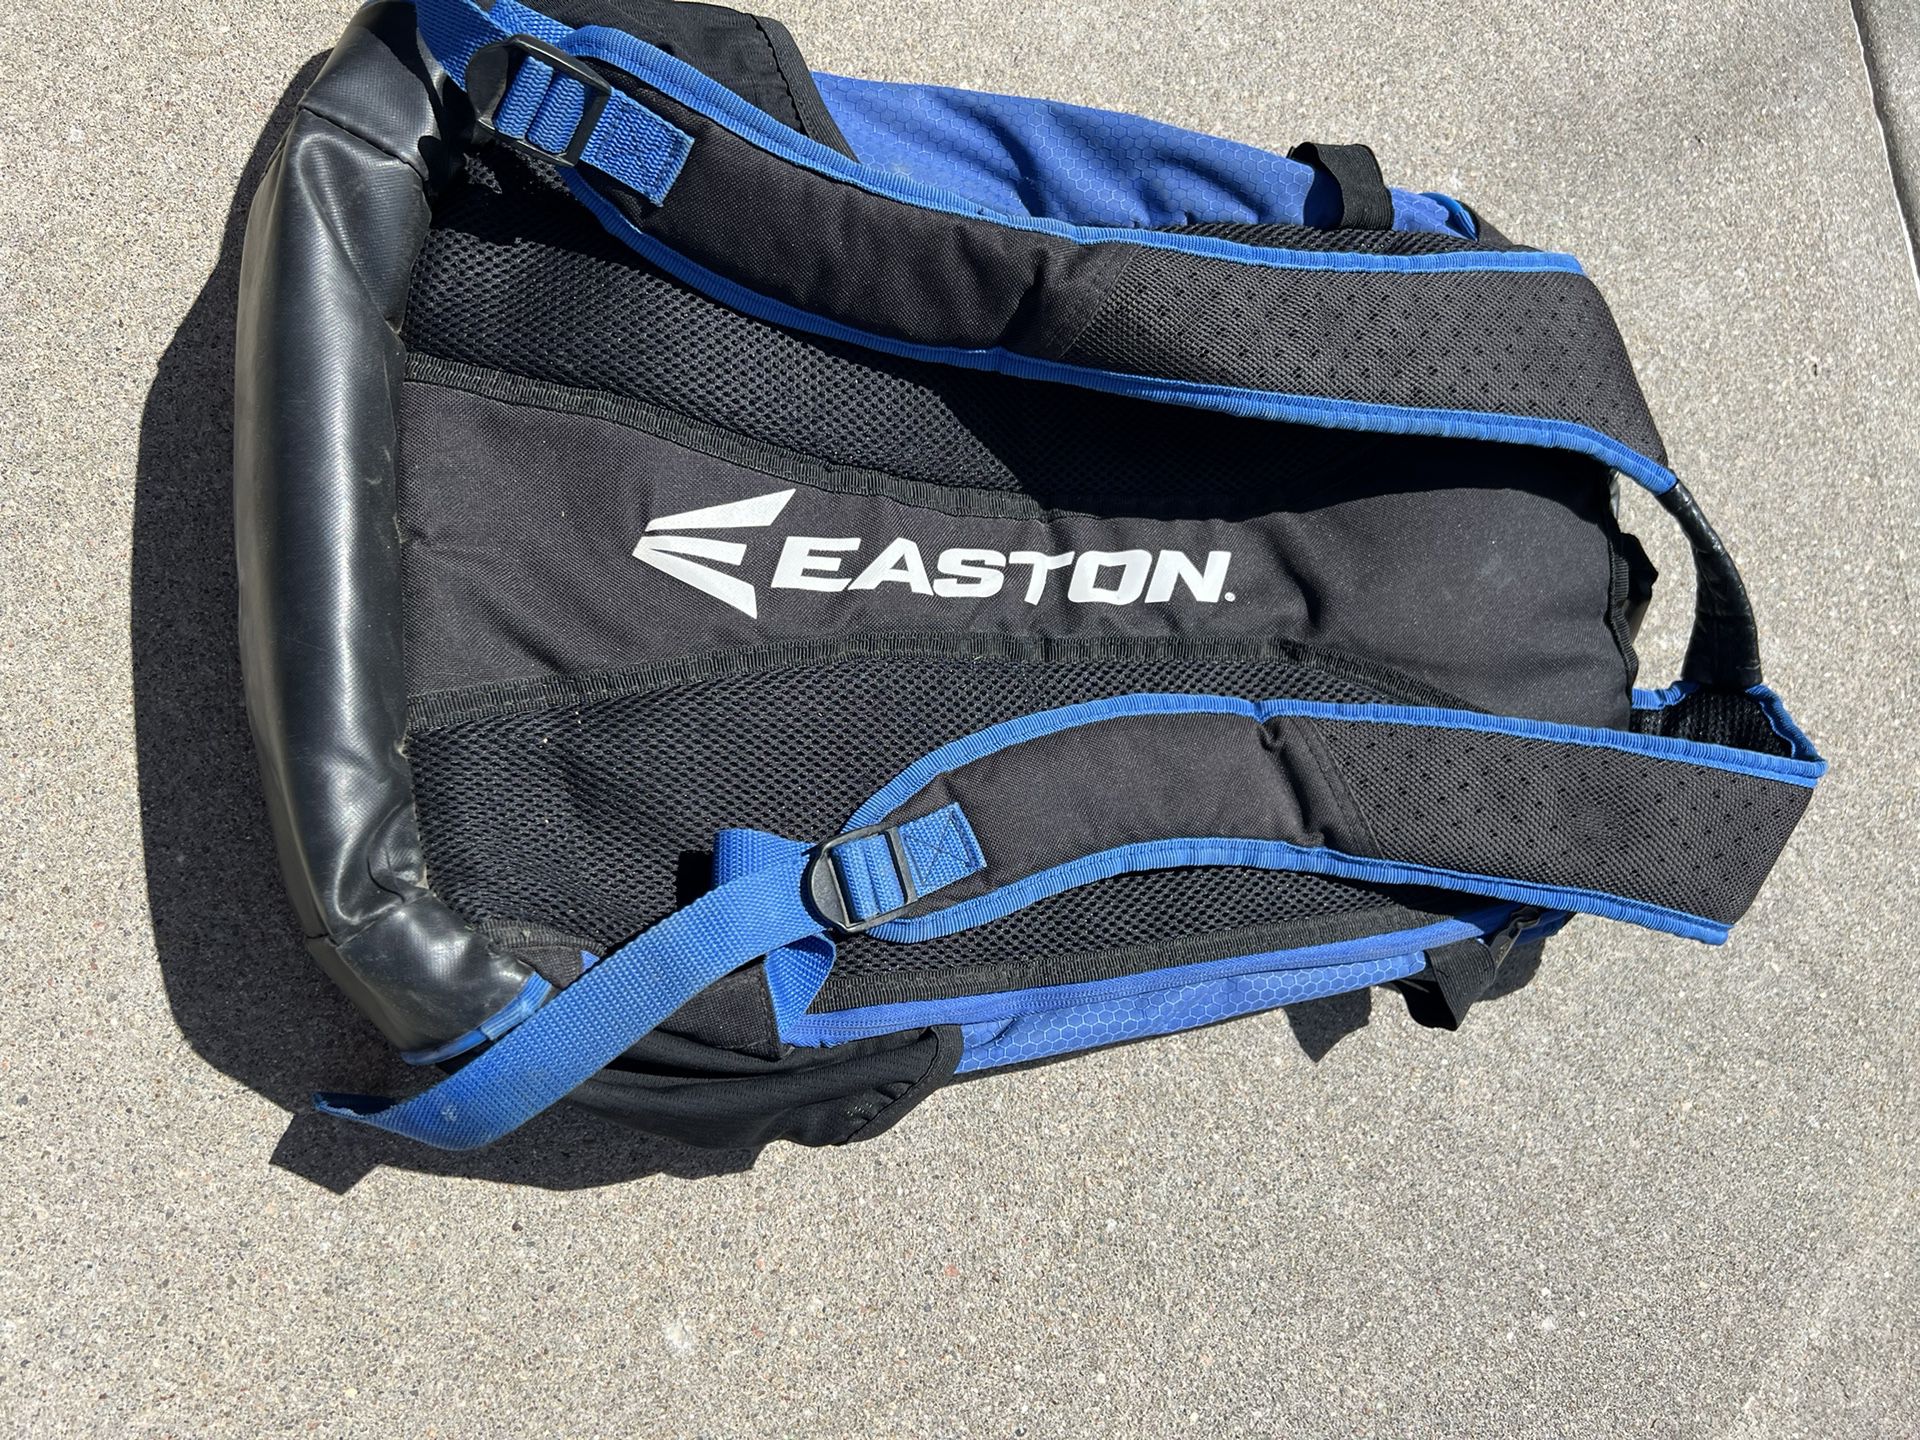 Easton Baseball Equipment Bag